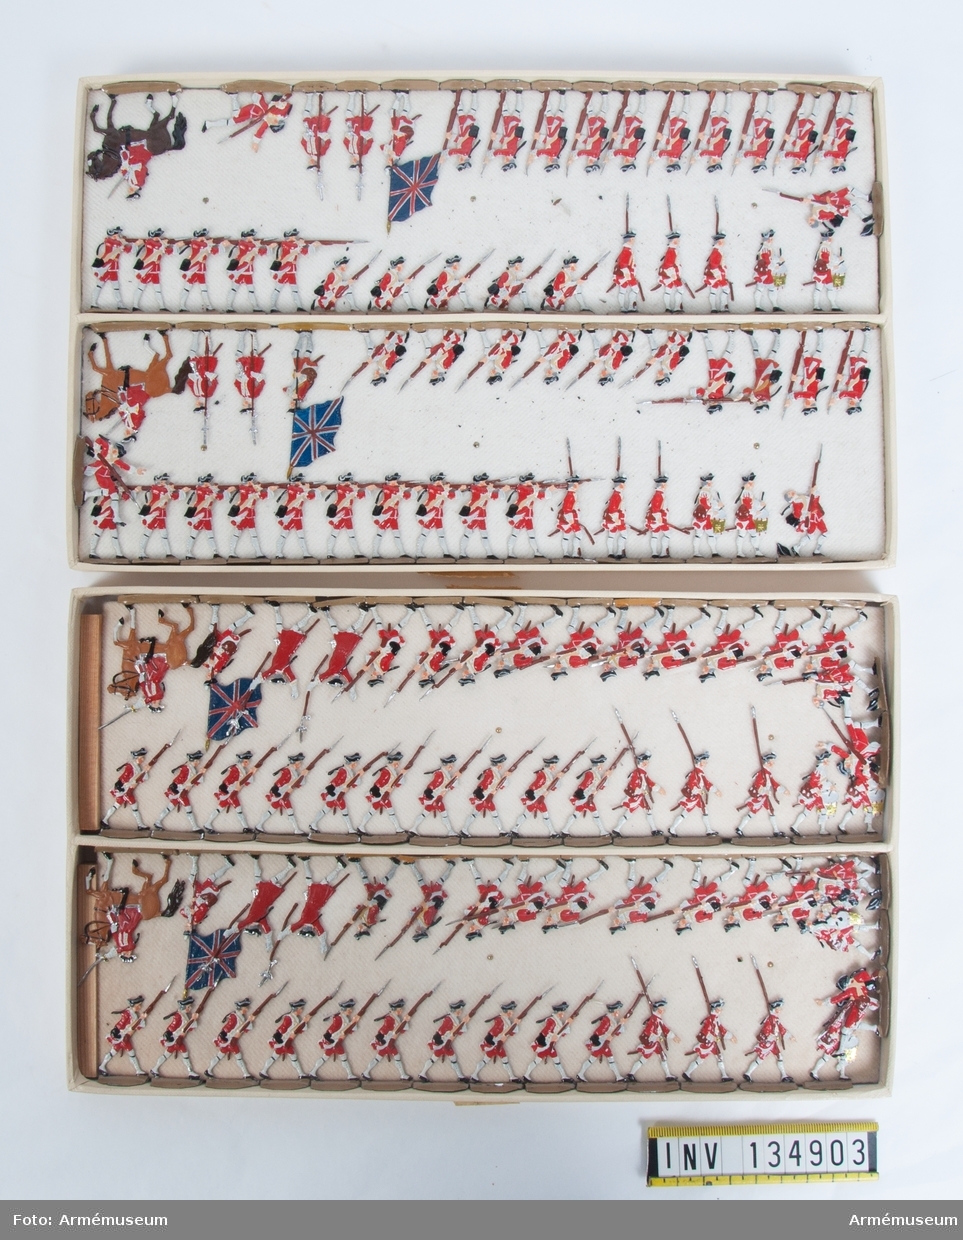 Infanteri från England från sjuåriga kriget.
Två lådor med infanteri i strid.
Fabriksmålade.